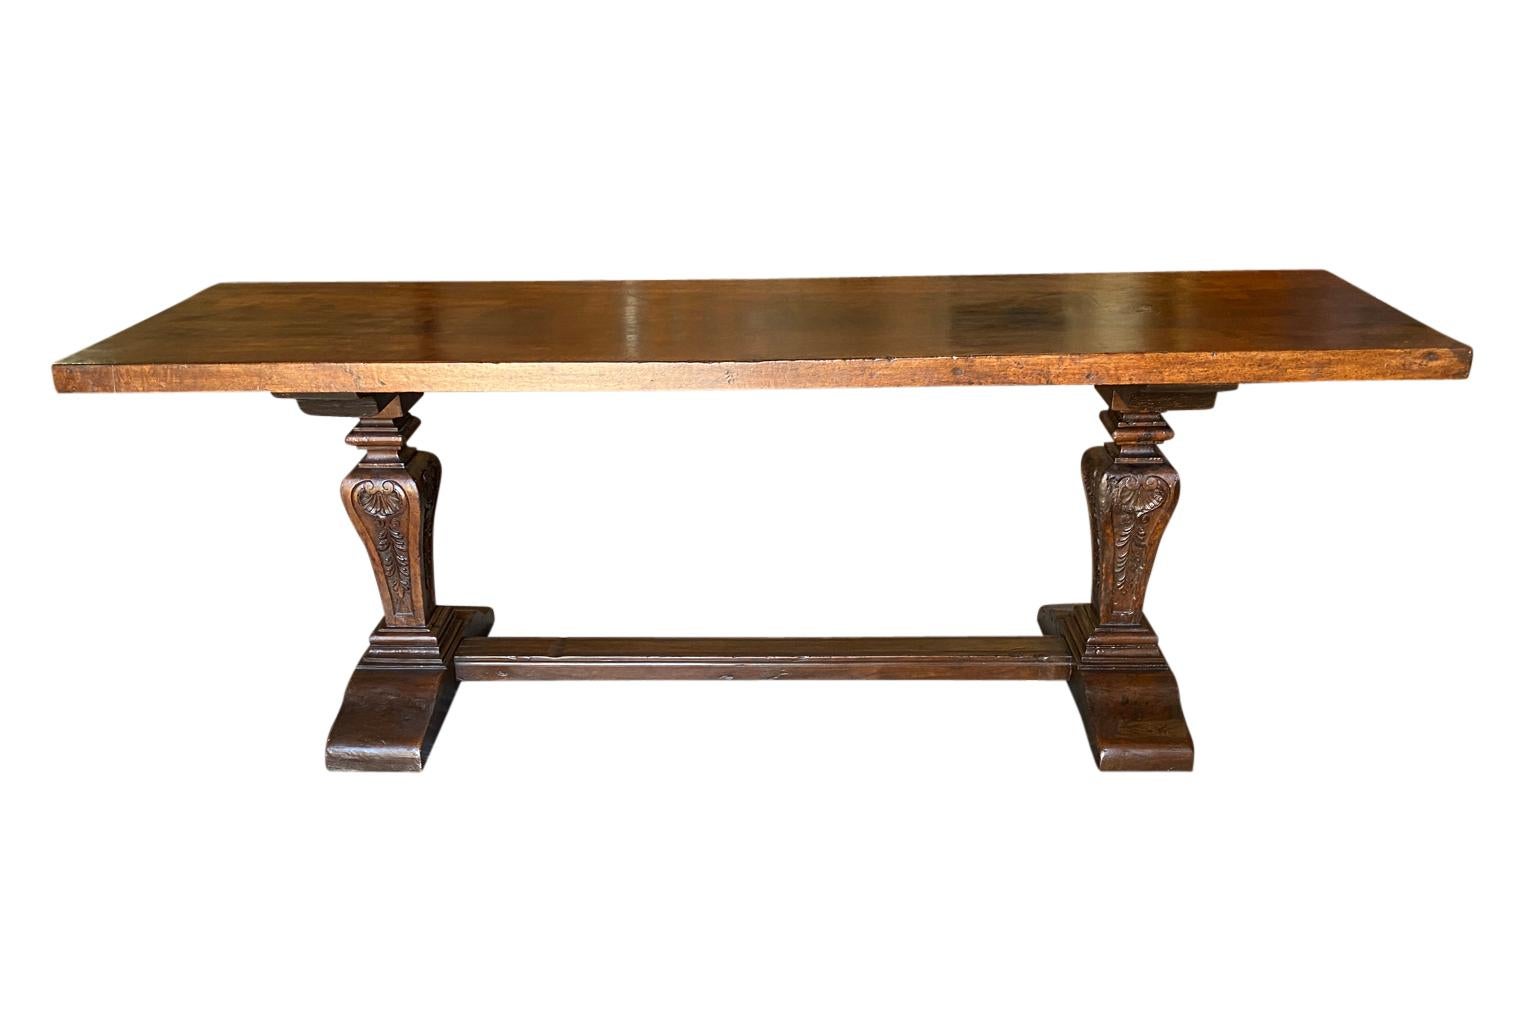 Une très belle table console du XVIIIe siècle provenant de Bologne, en Italie.  Merveilleusement construit en très beau noyer avec un épais plateau en bois massif et des pieds magnifiquement sculptés.  Excellente patine.